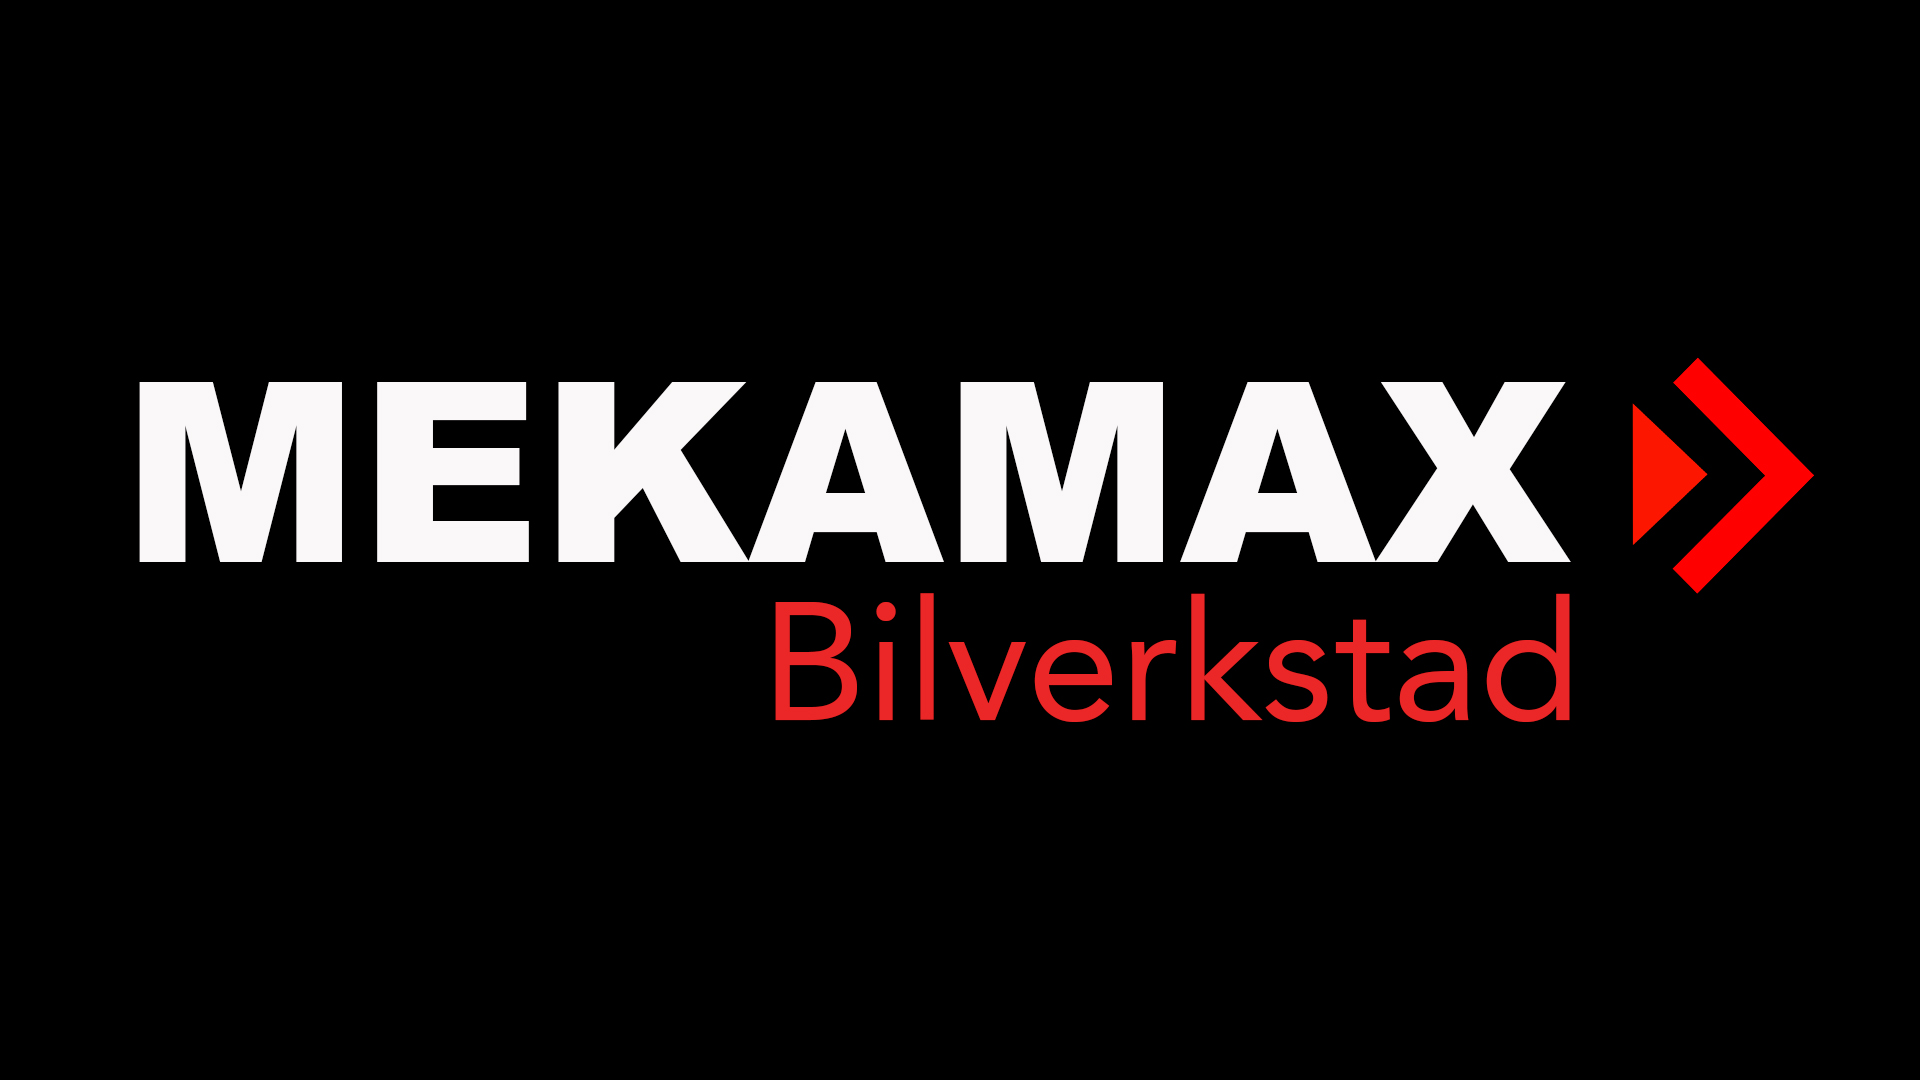 Mekamax AB logo